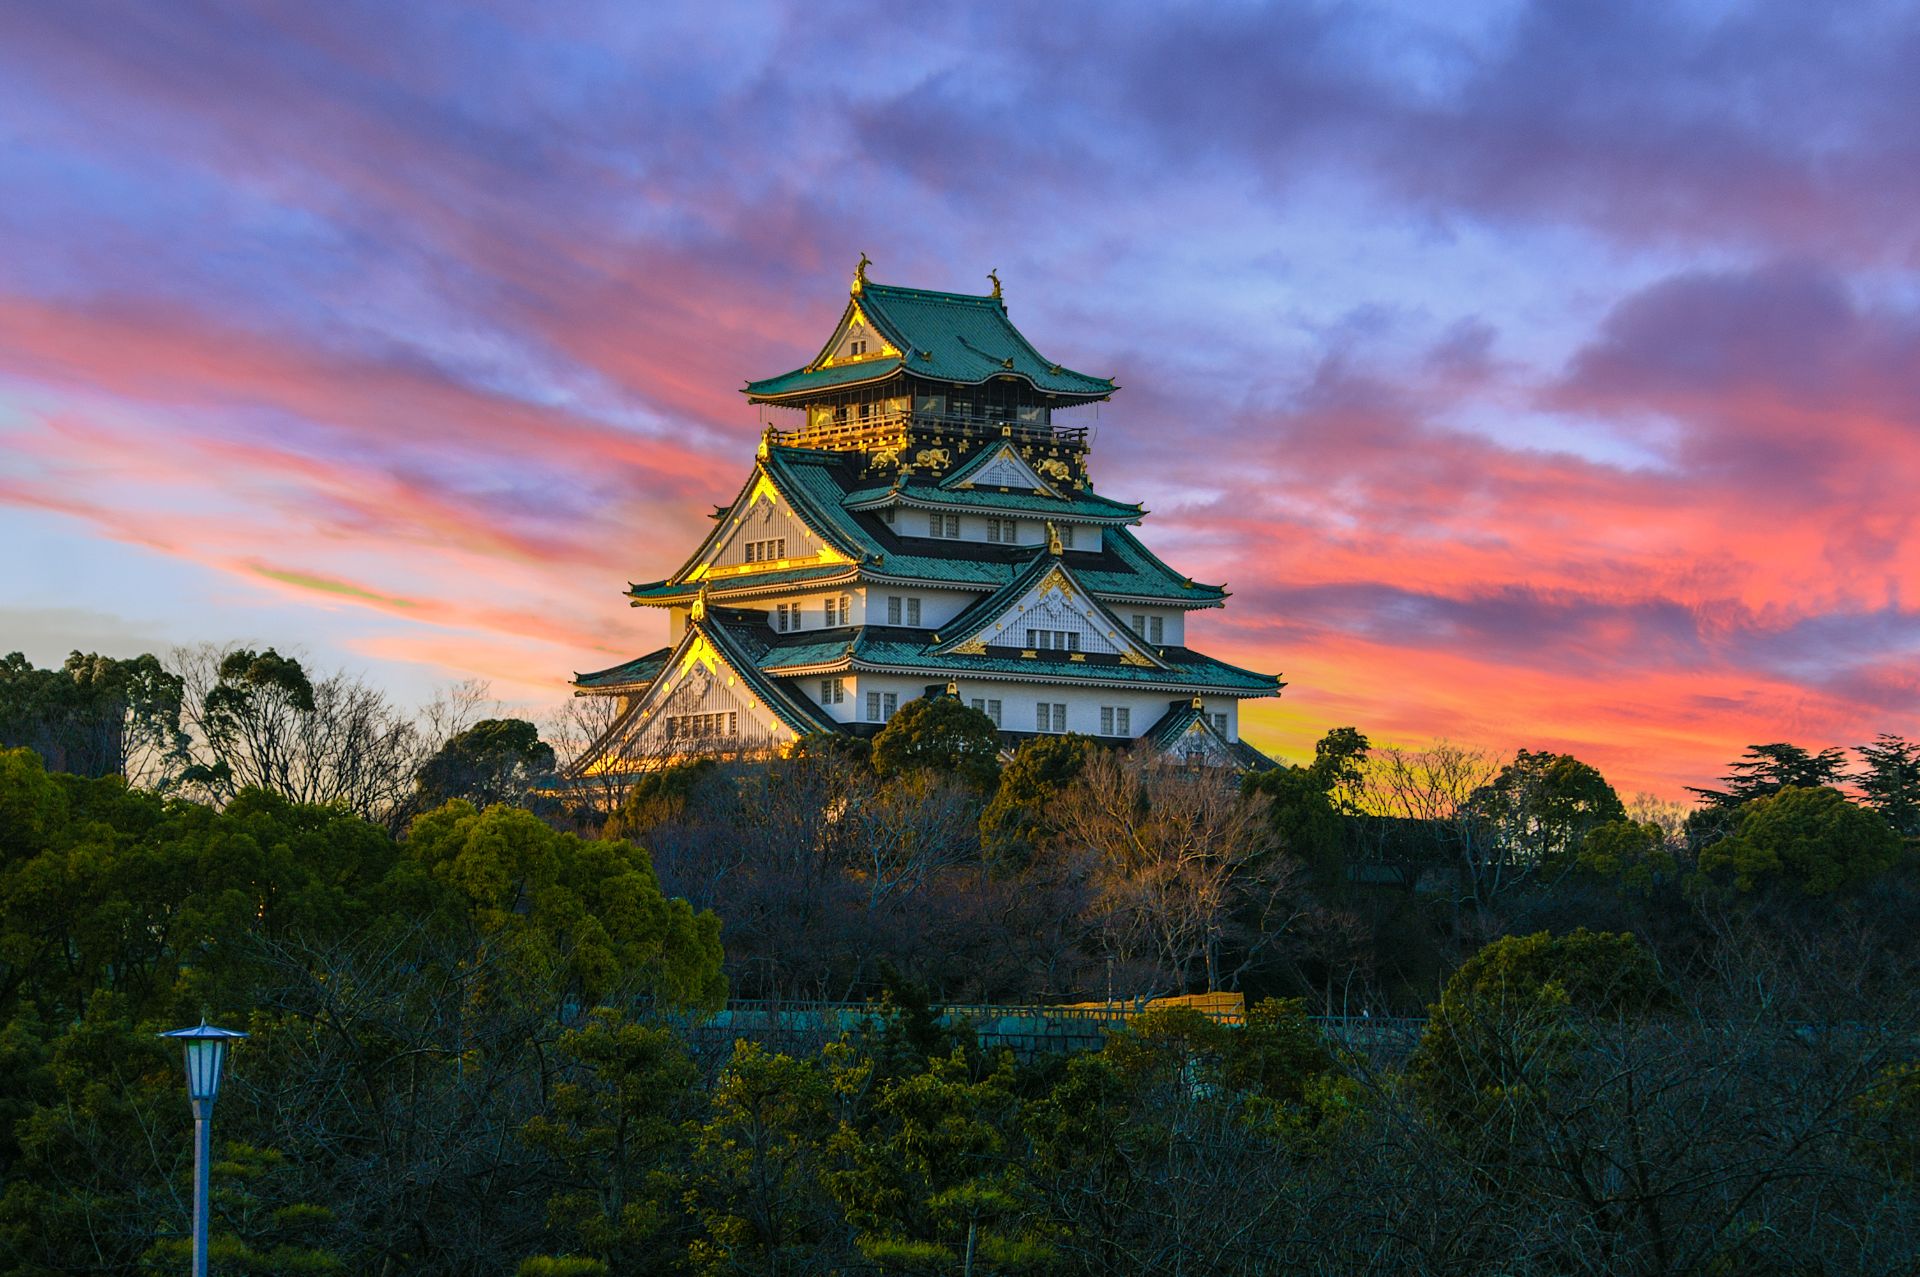 Sunset Image Of Osaka Castle In Osaka